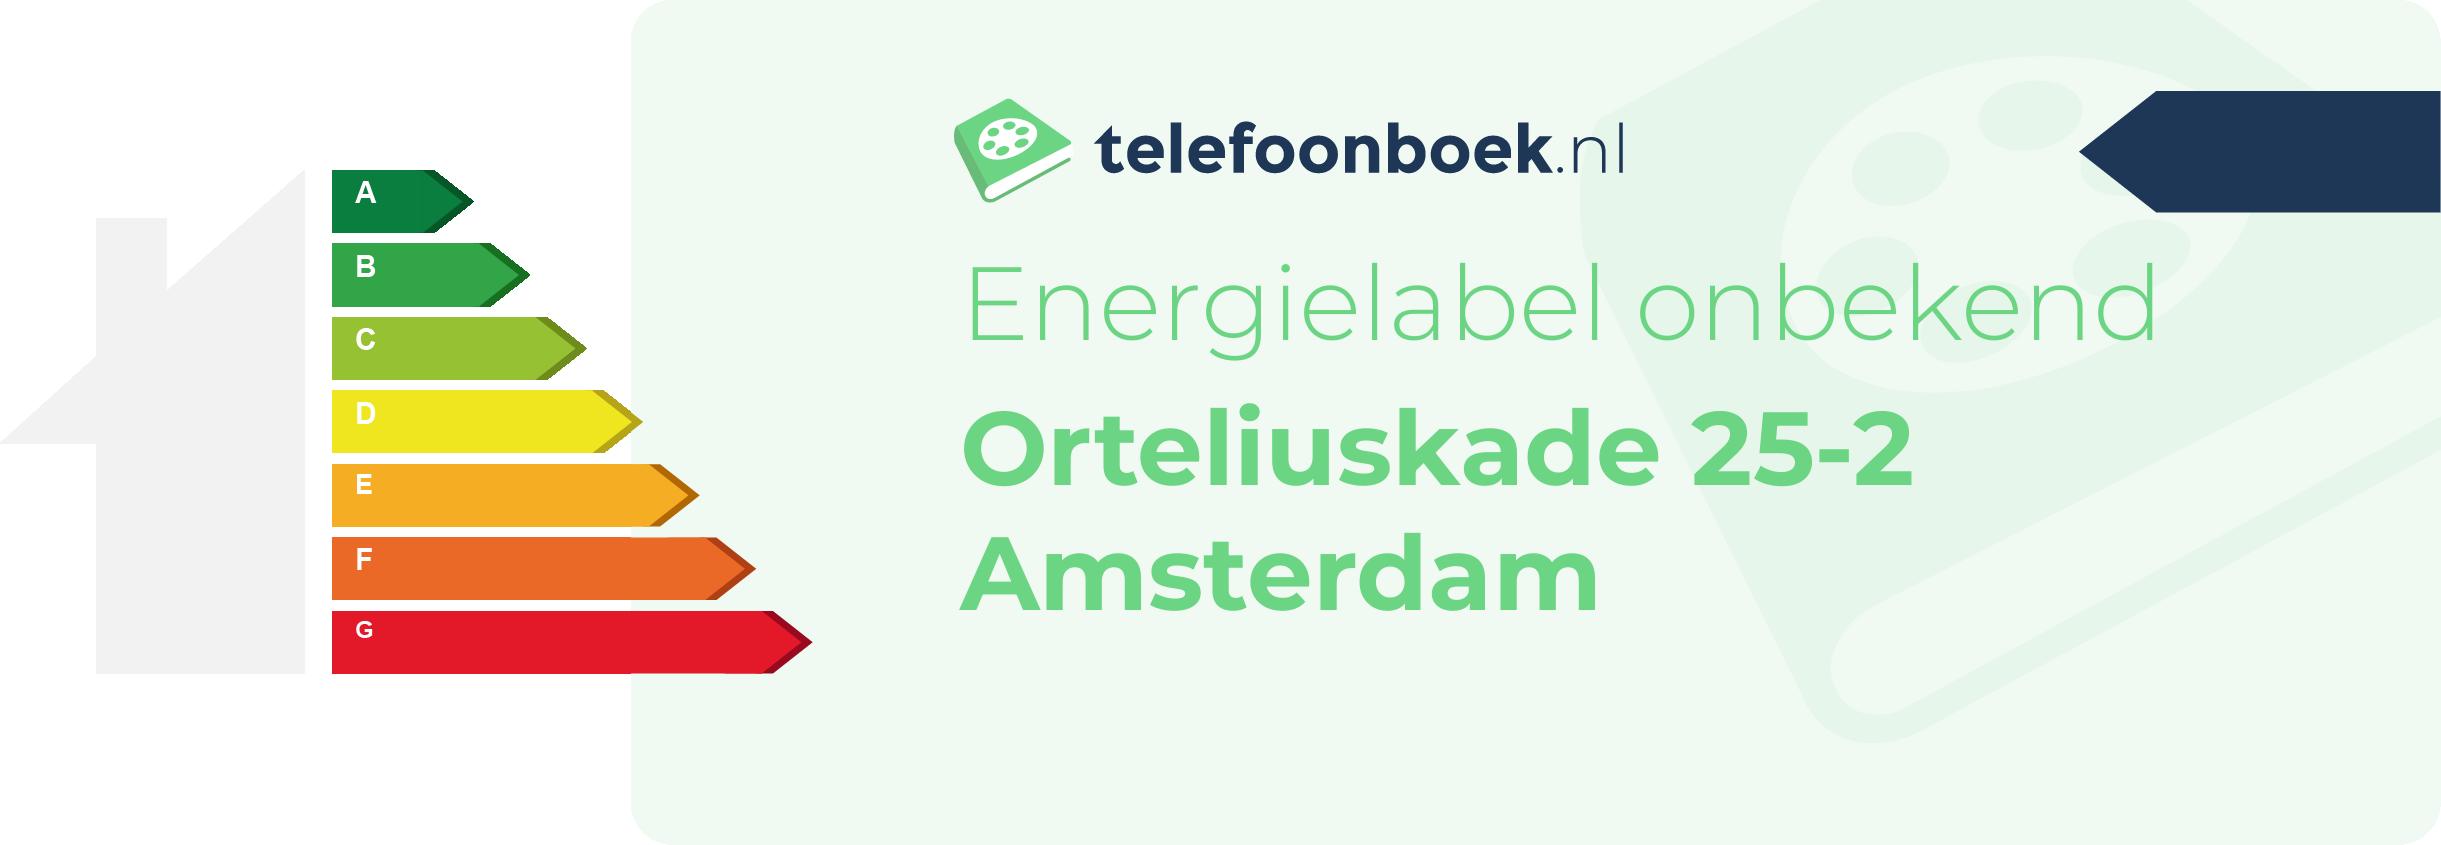 Energielabel Orteliuskade 25-2 Amsterdam